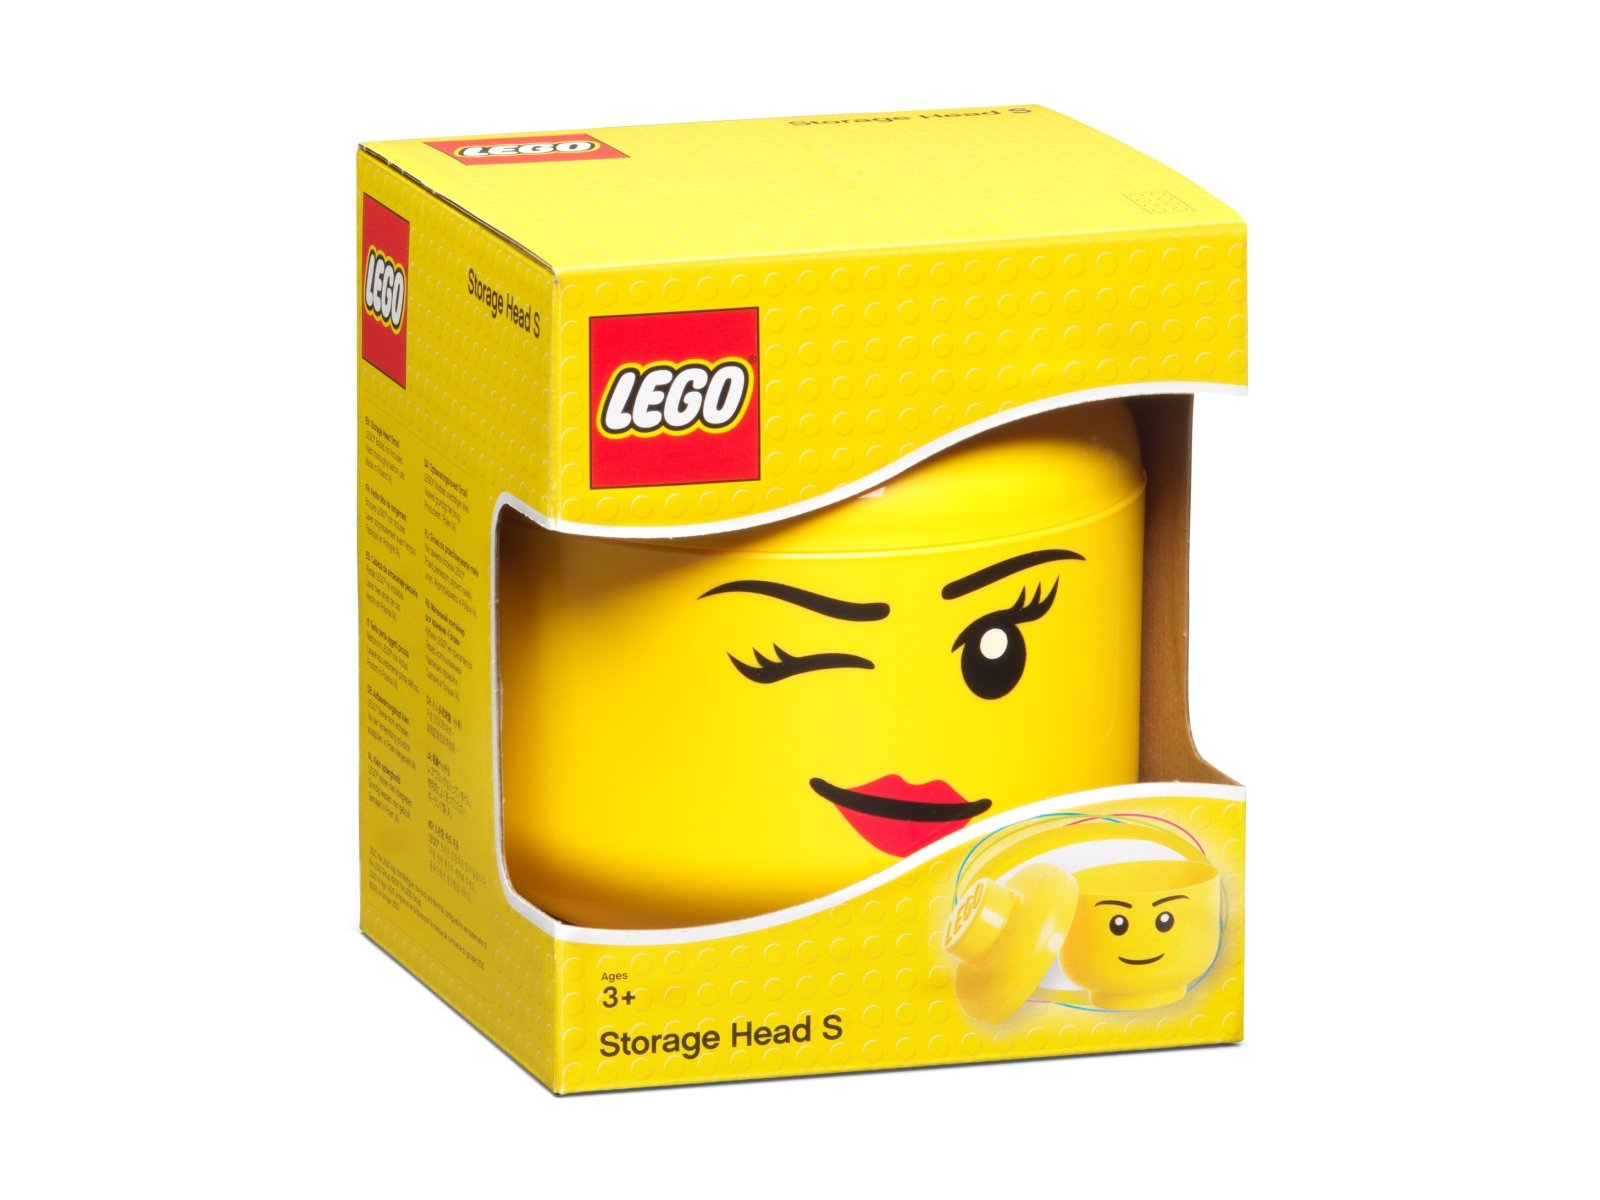 LEGO 5006186 Mały pojemnik w kształcie głowy mrugającej minifigurki LEGO®